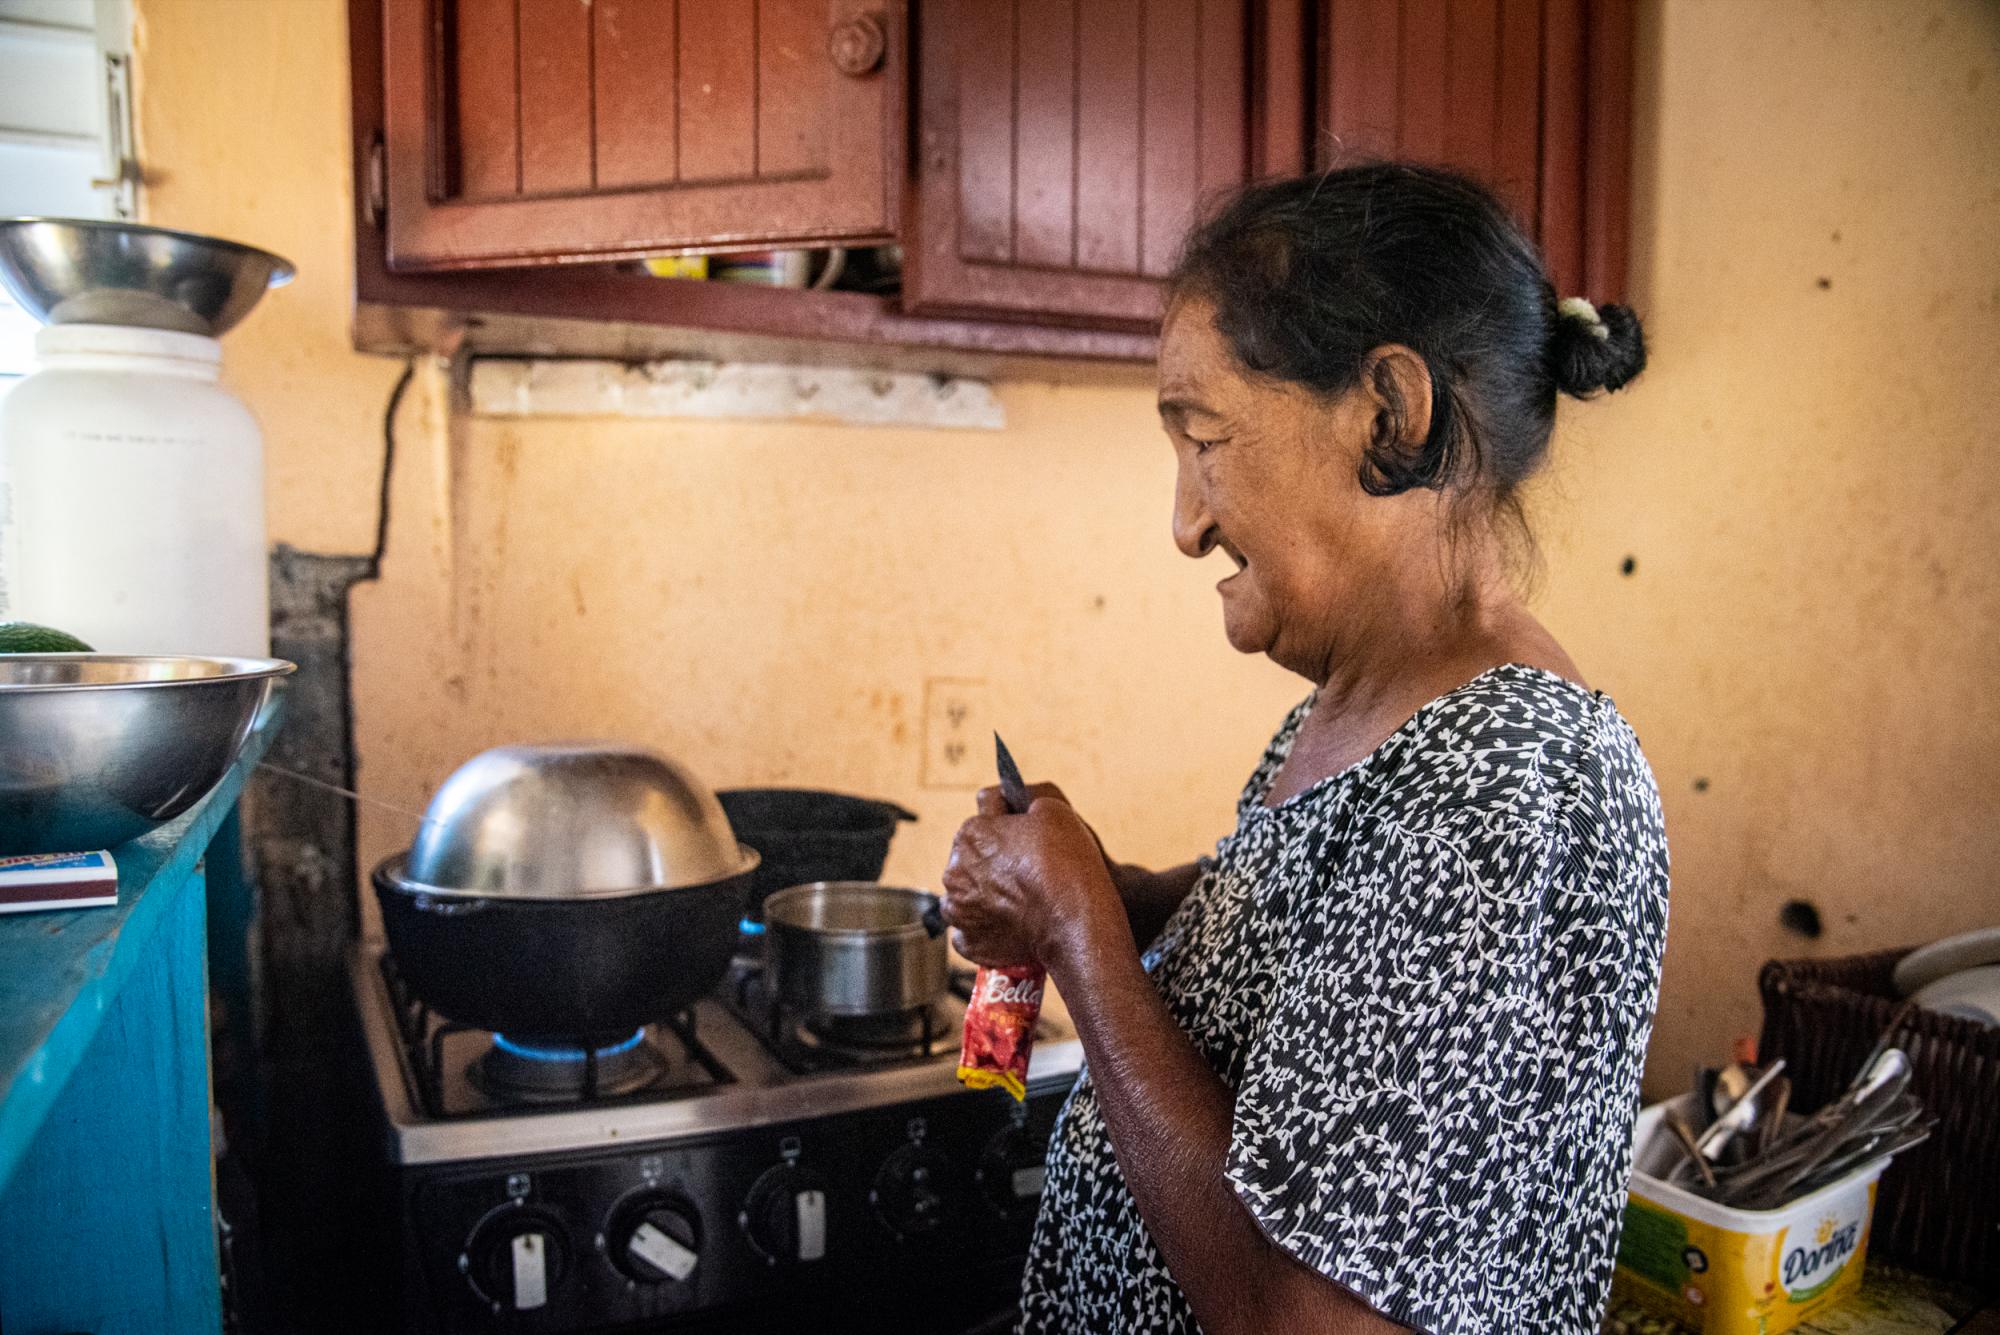 La abuela en la cocina (Juan Miguel Peña / Diario Libre)